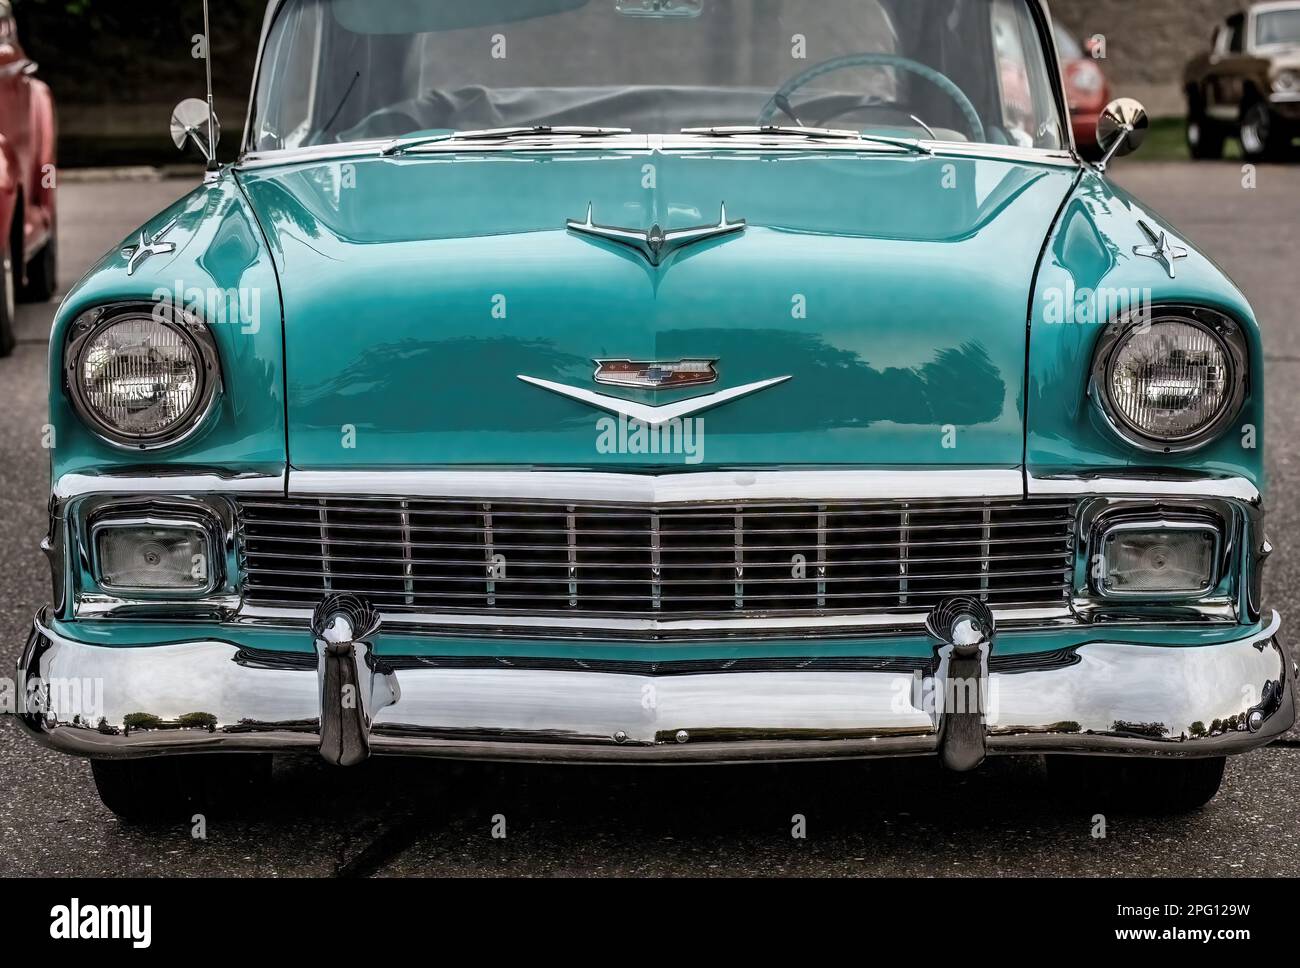 Vue avant d'un magnifique cabriolet Bel Air 1956 de Chevrolet lors d'une soirée de printemps à Lindstrom, Minnesota, États-Unis. Banque D'Images